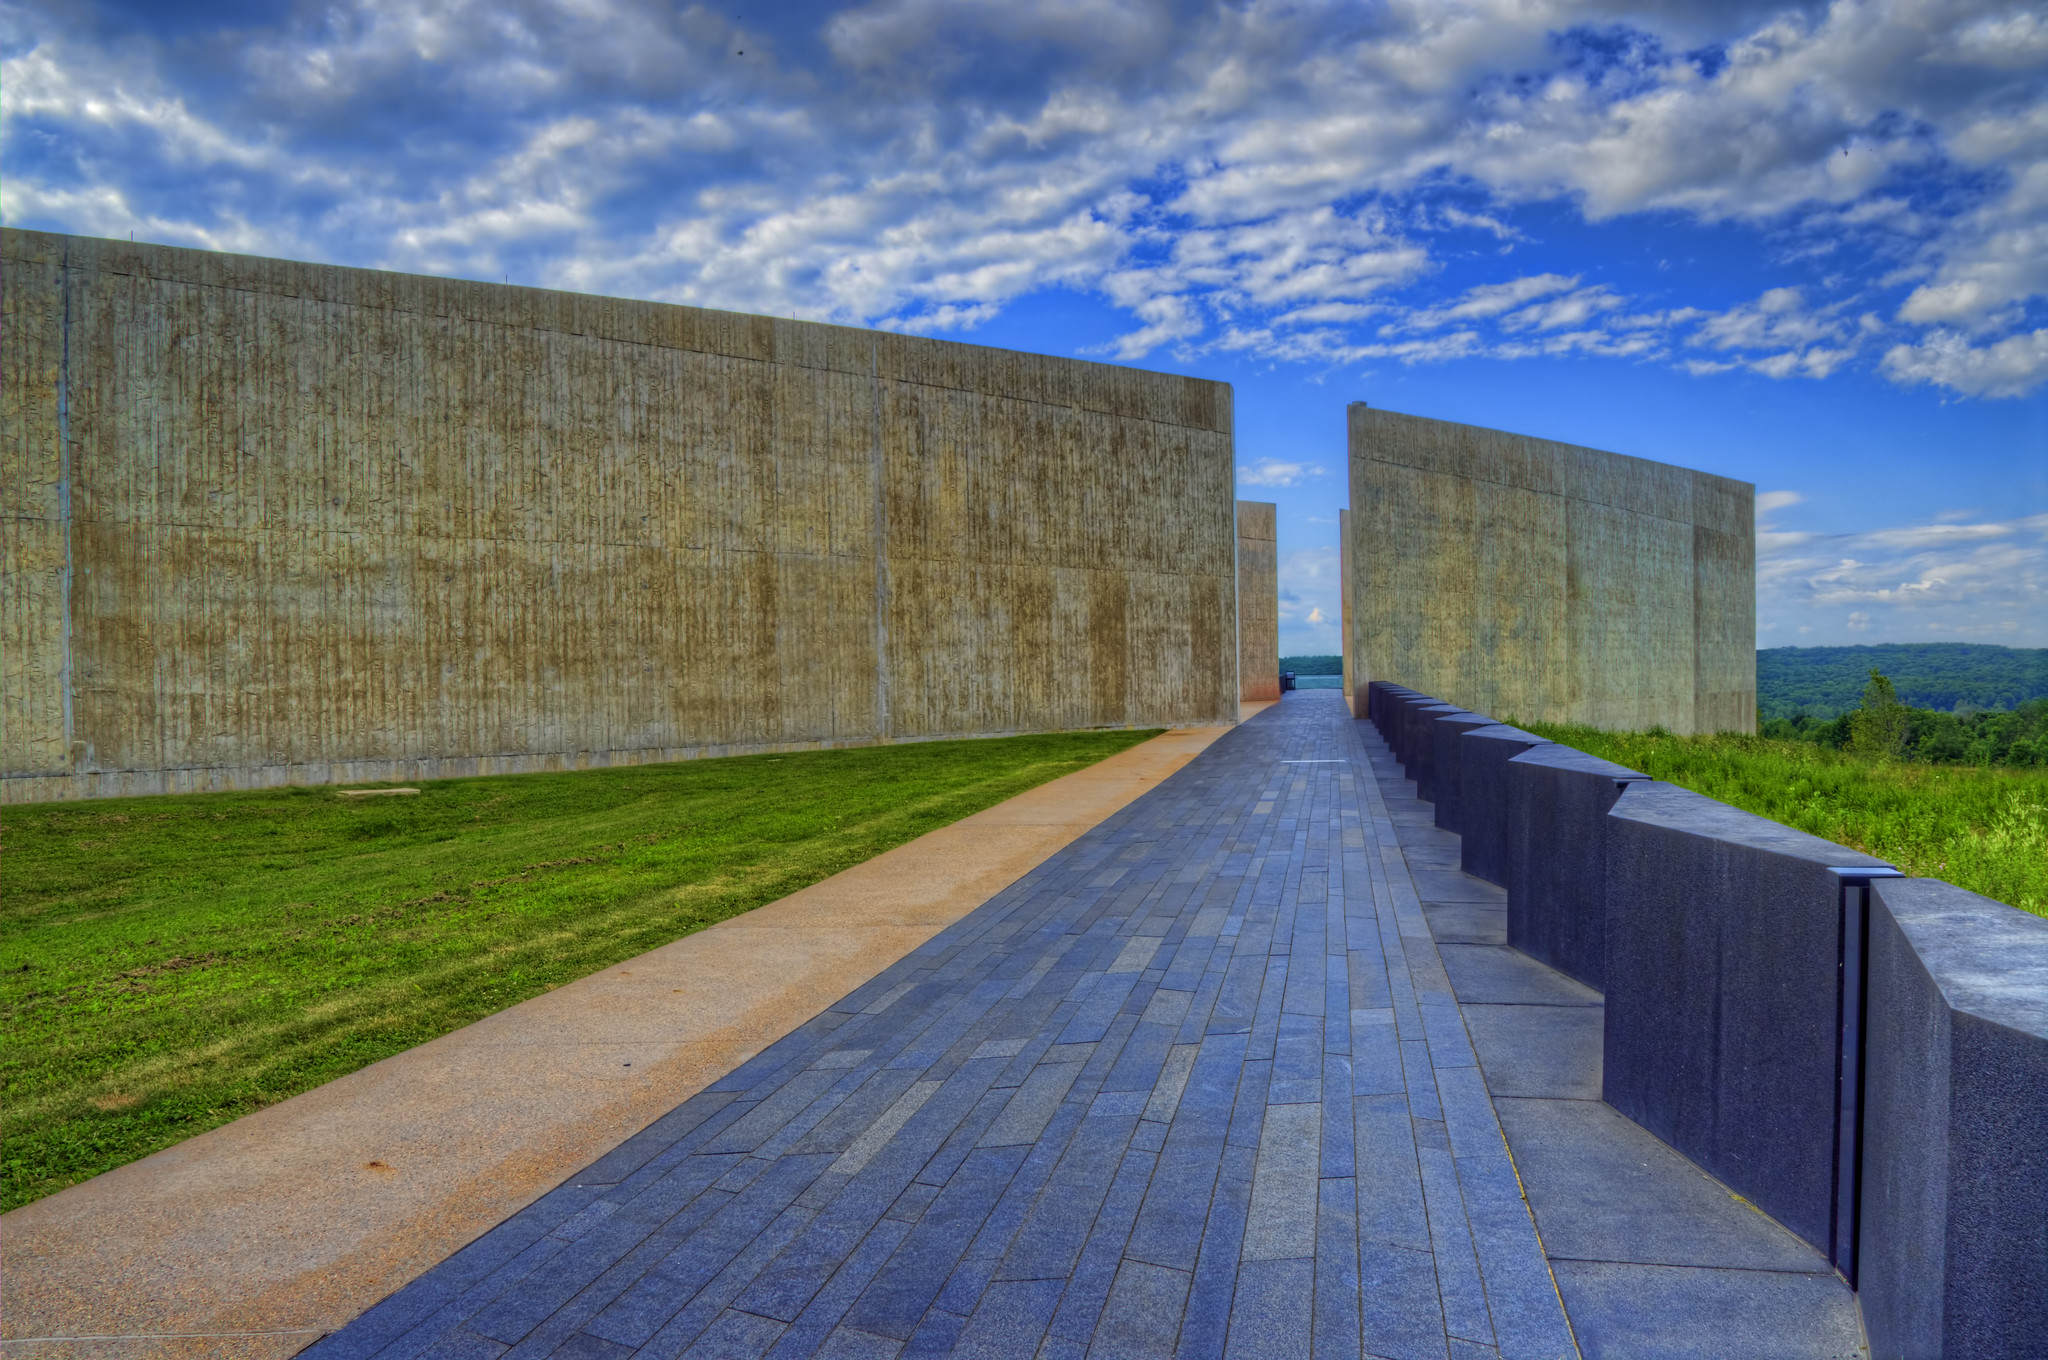 The Flight 93 Memorial in Shanksville, Pennsylvania.